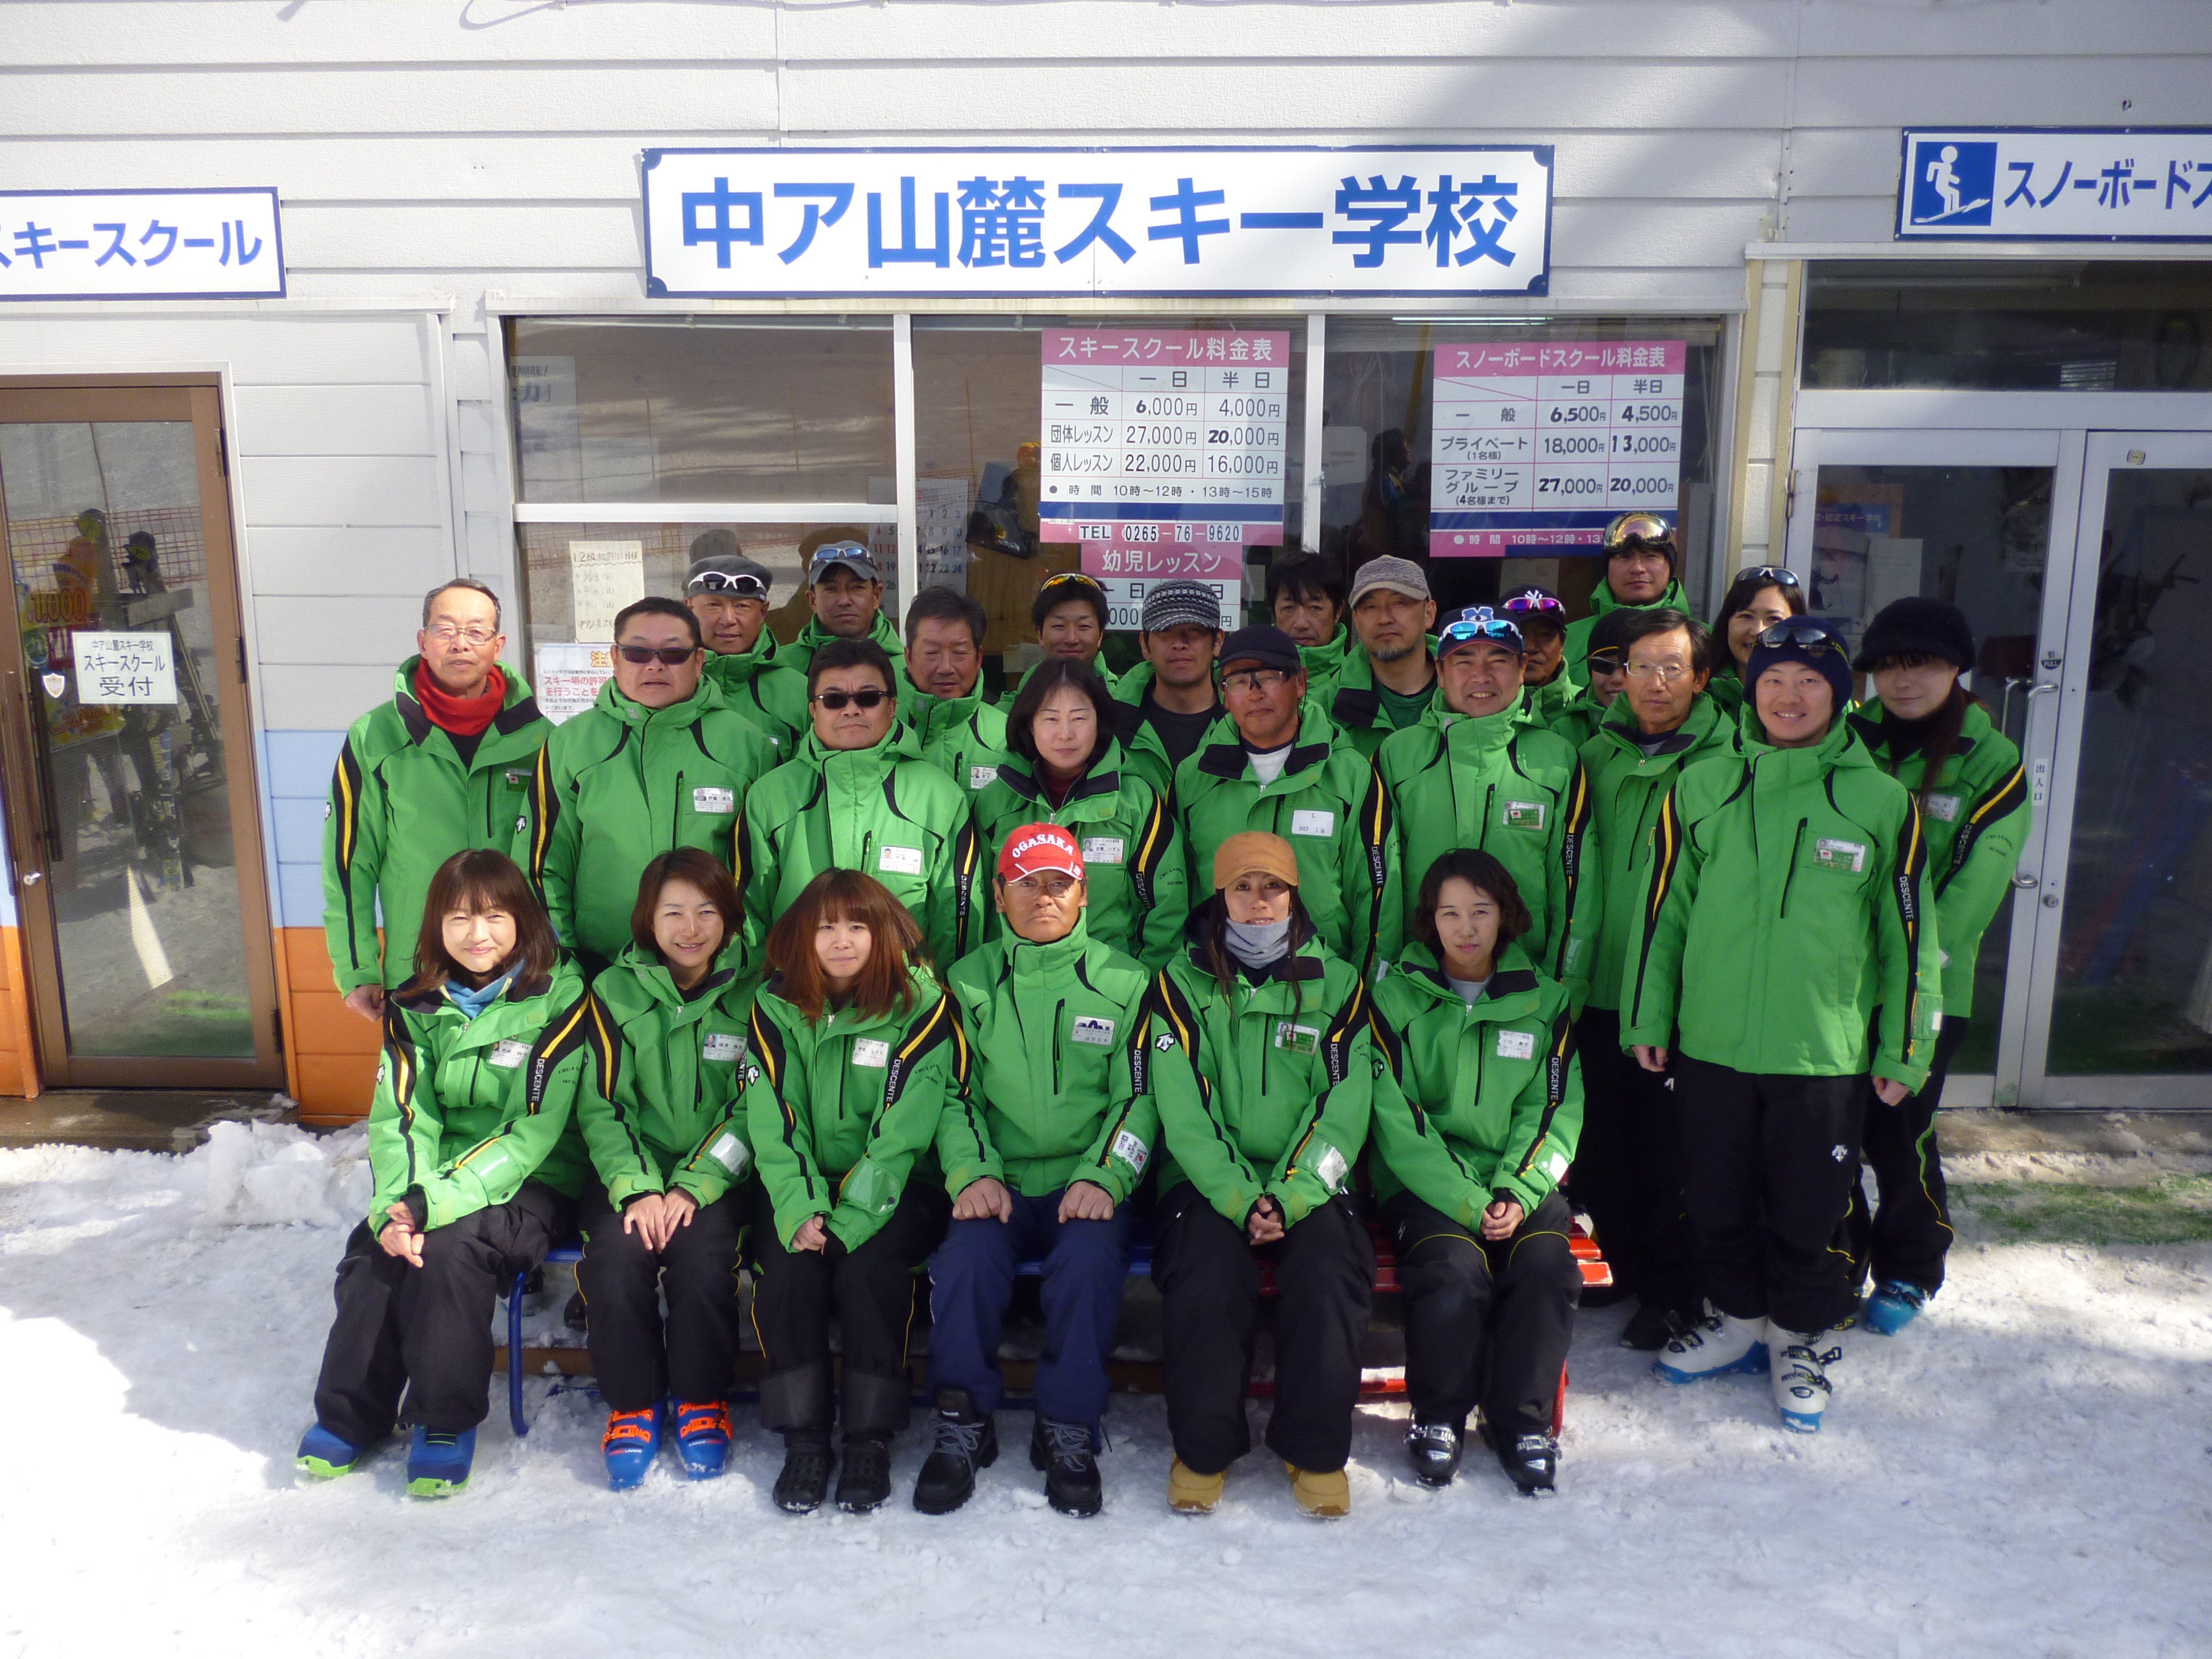 長野県 スキー場 伊那スキーリゾート スキー教室